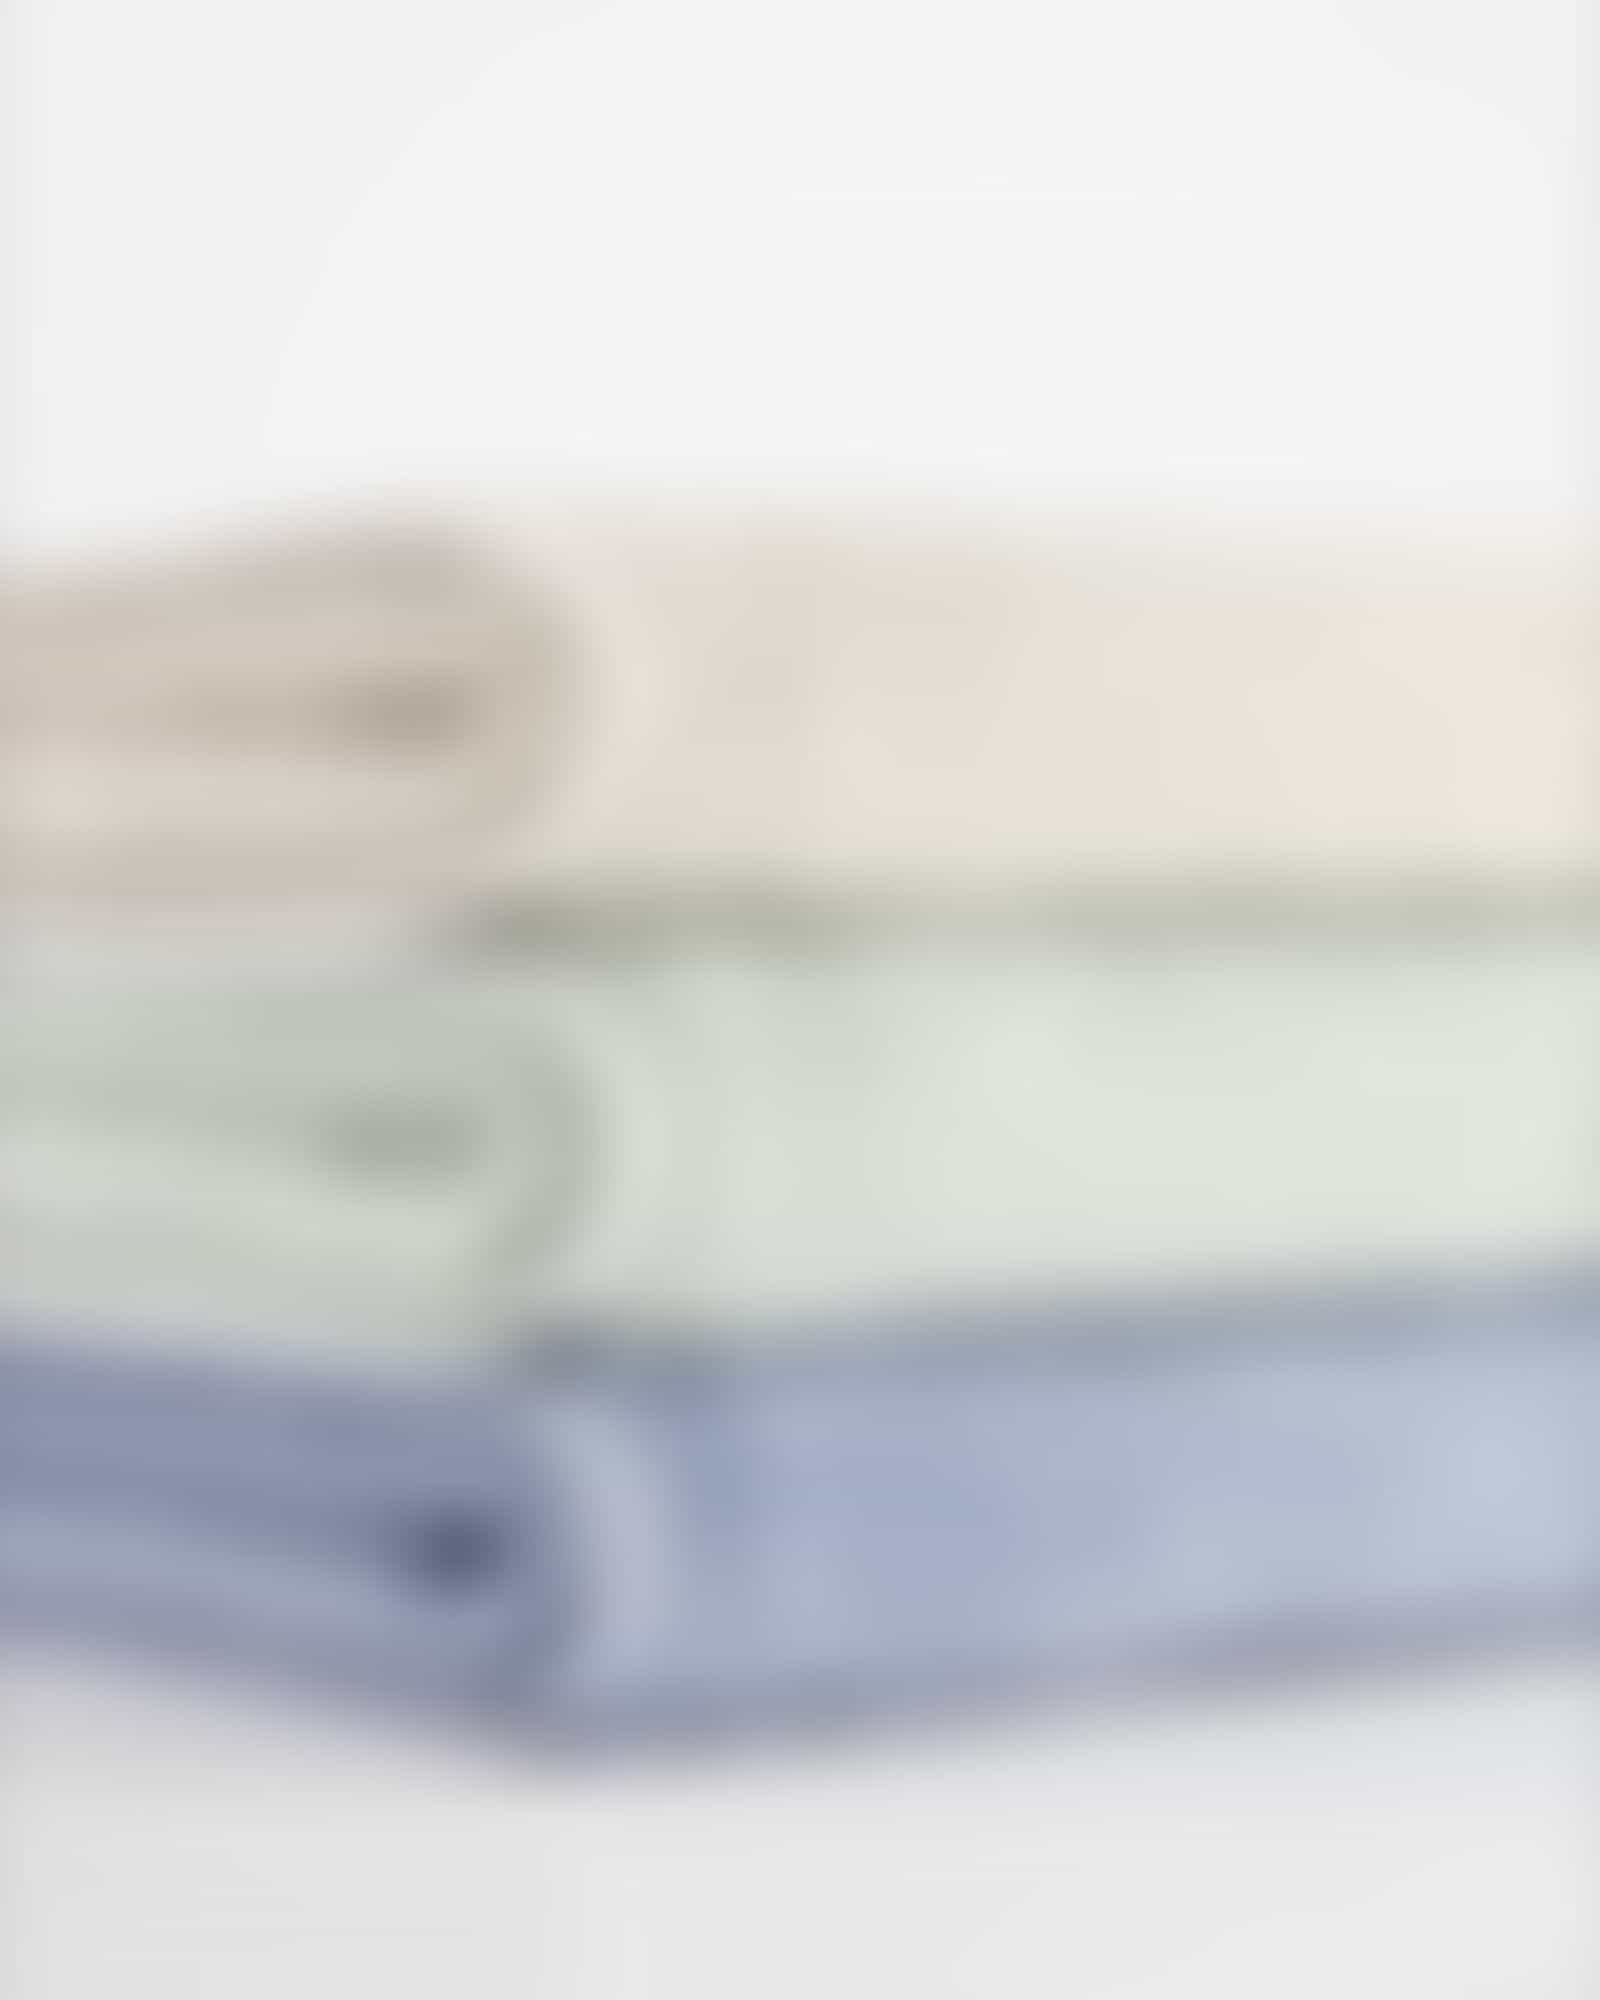 Cawö Handtücher Pure 6500 - Farbe: eukalyptus - 450 - Handtuch 50x100 cm